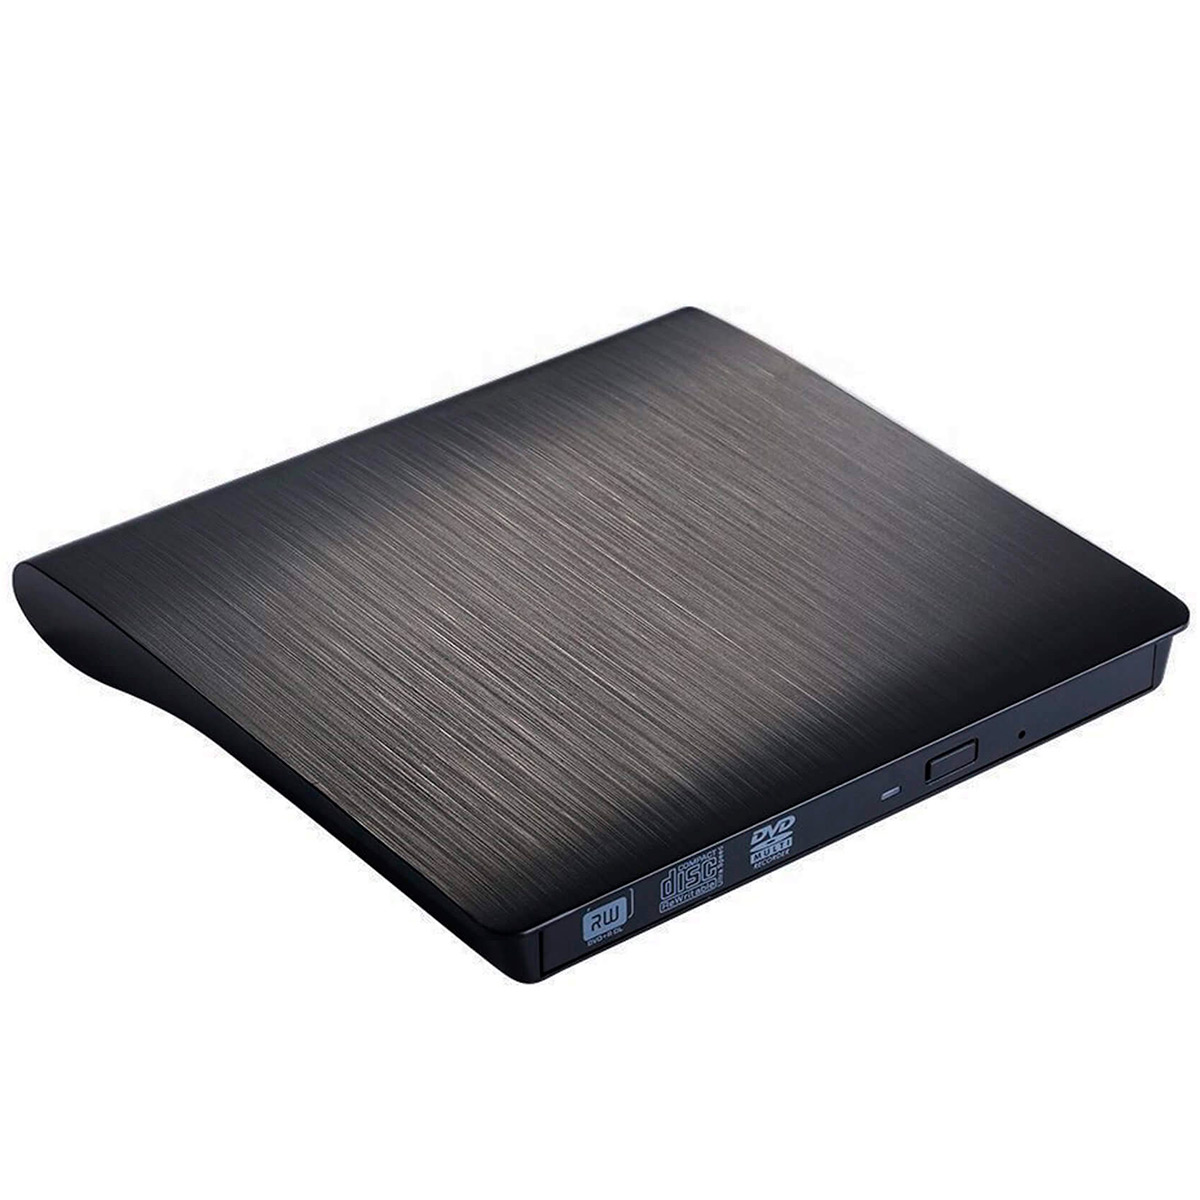 Gravador DVD Externo Slim Bluecase - Portátil - USB 3.0 - BGDE-04